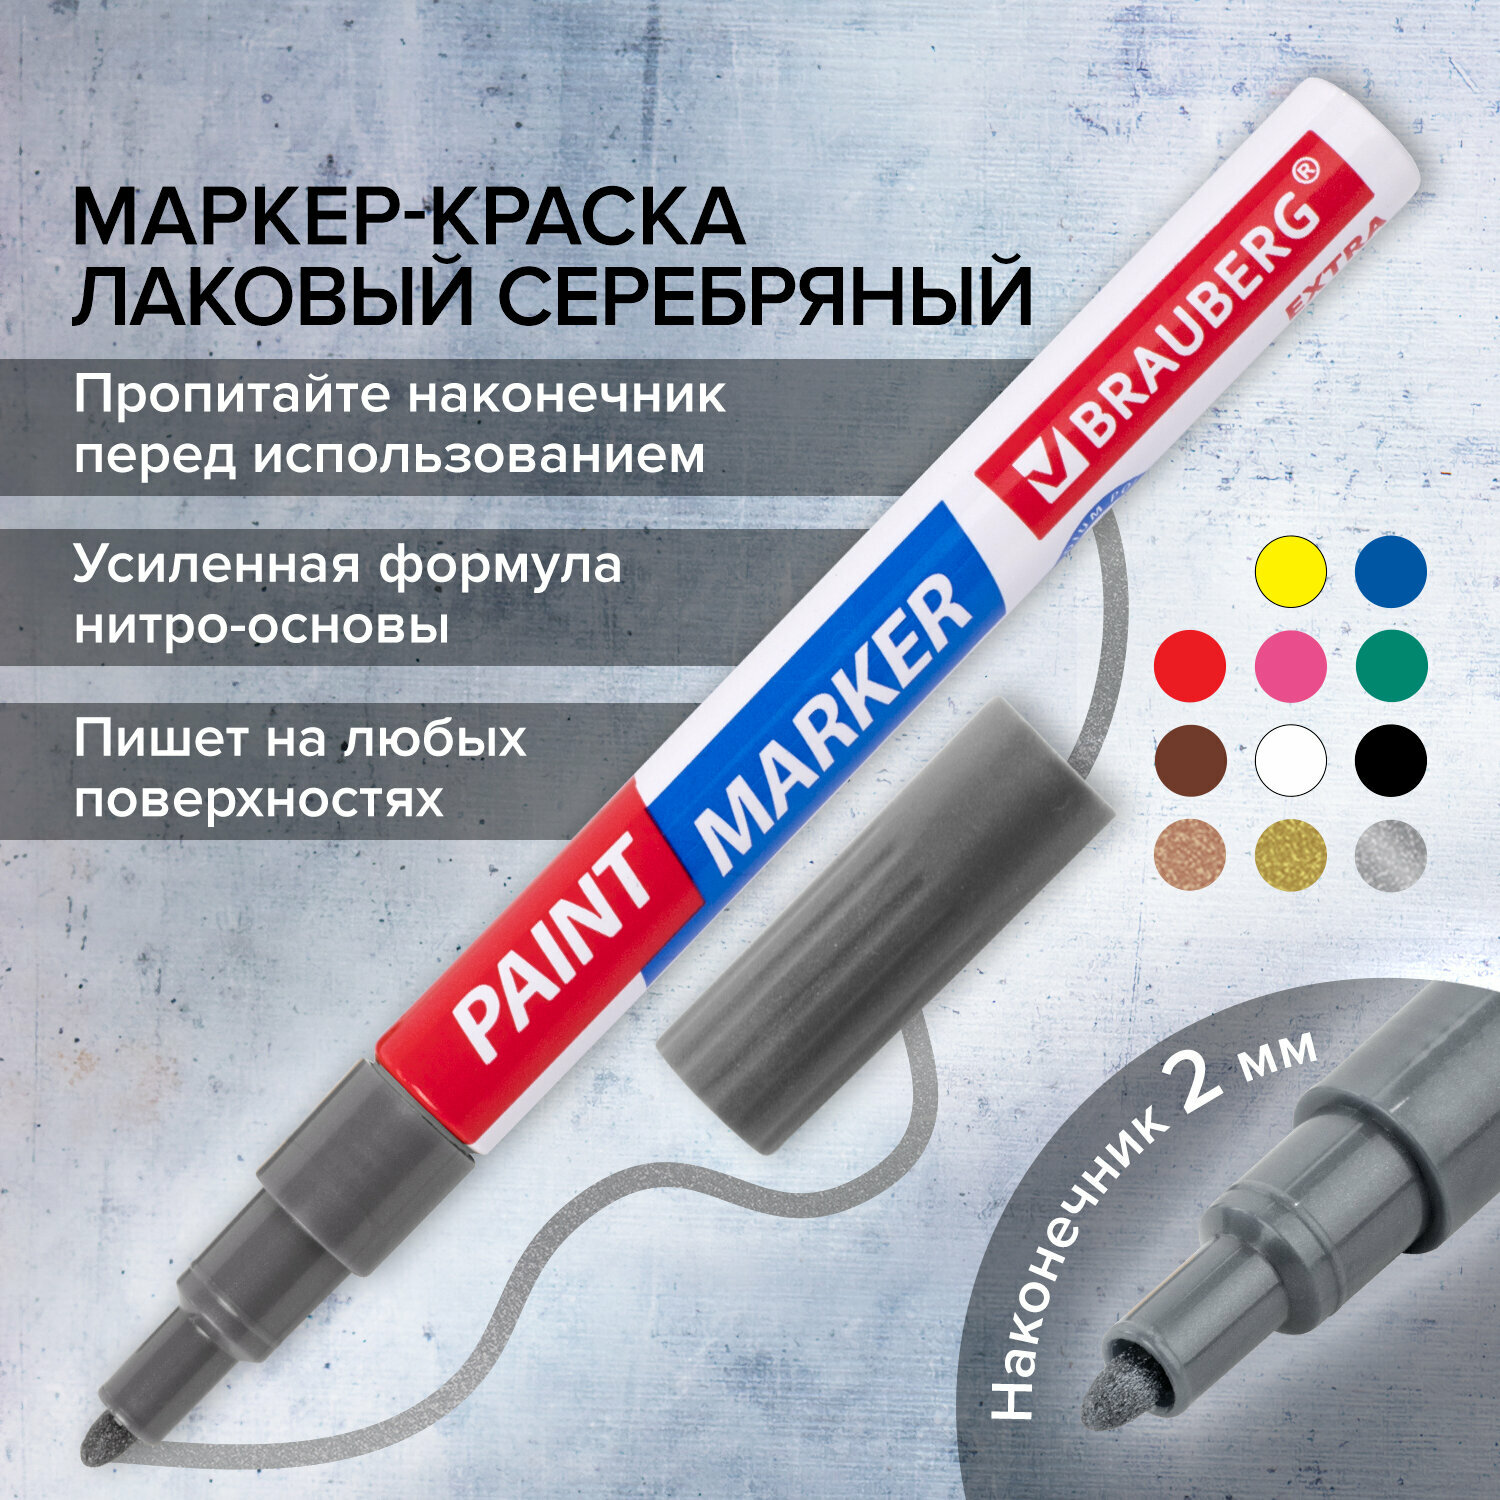 Маркер краска лаковый paint marker 2 мм строительный серебряный, фломастер, усиленная нитро основа, Brauberg Extra, 151971